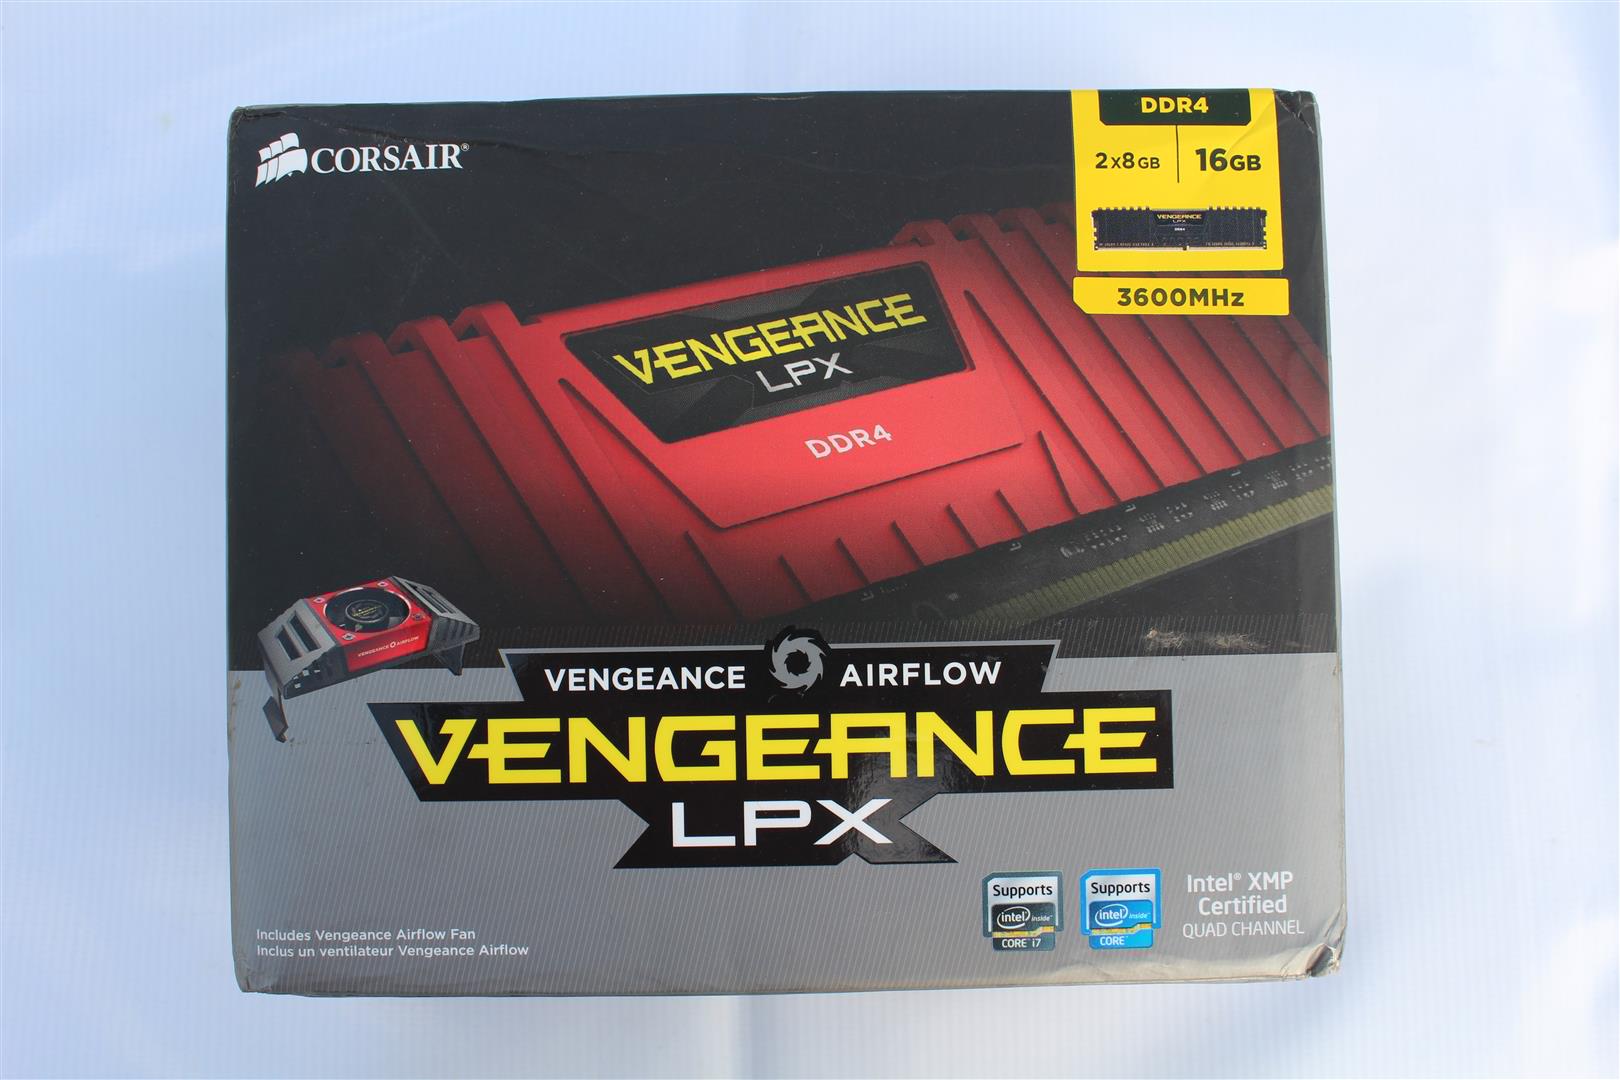 Vengeance LPX DDR4 3600MHz | PC TeK REVIEWS